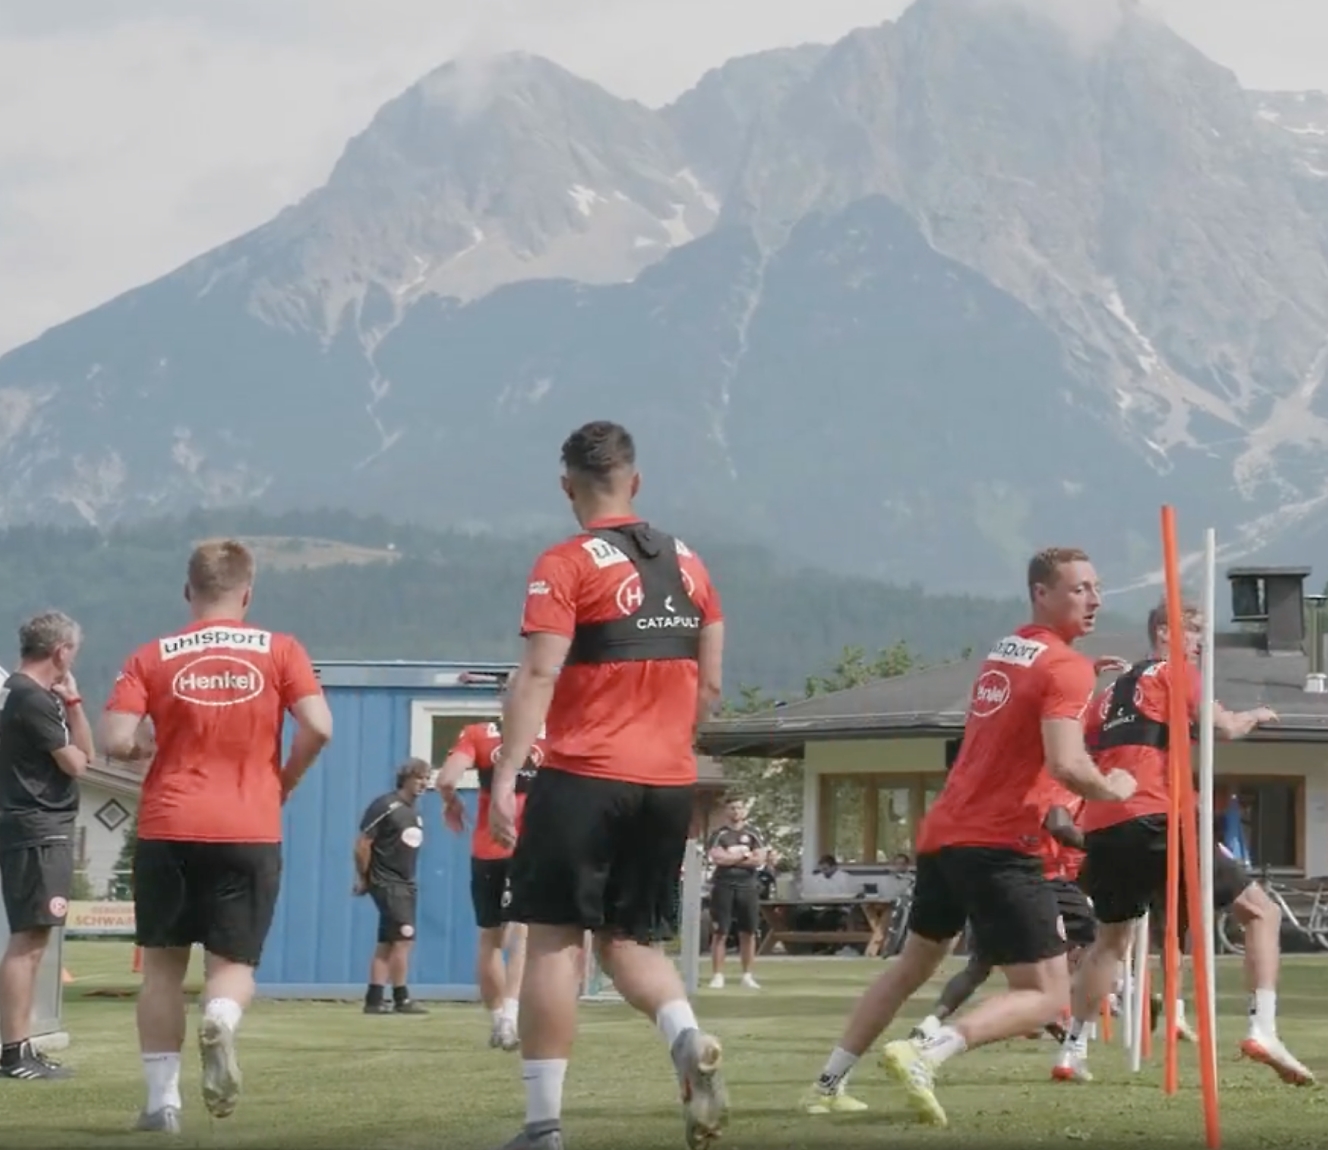 Jugadores de fútbol con camisetas rojas entrenando al aire libre con vistas a las montañas de fondo.